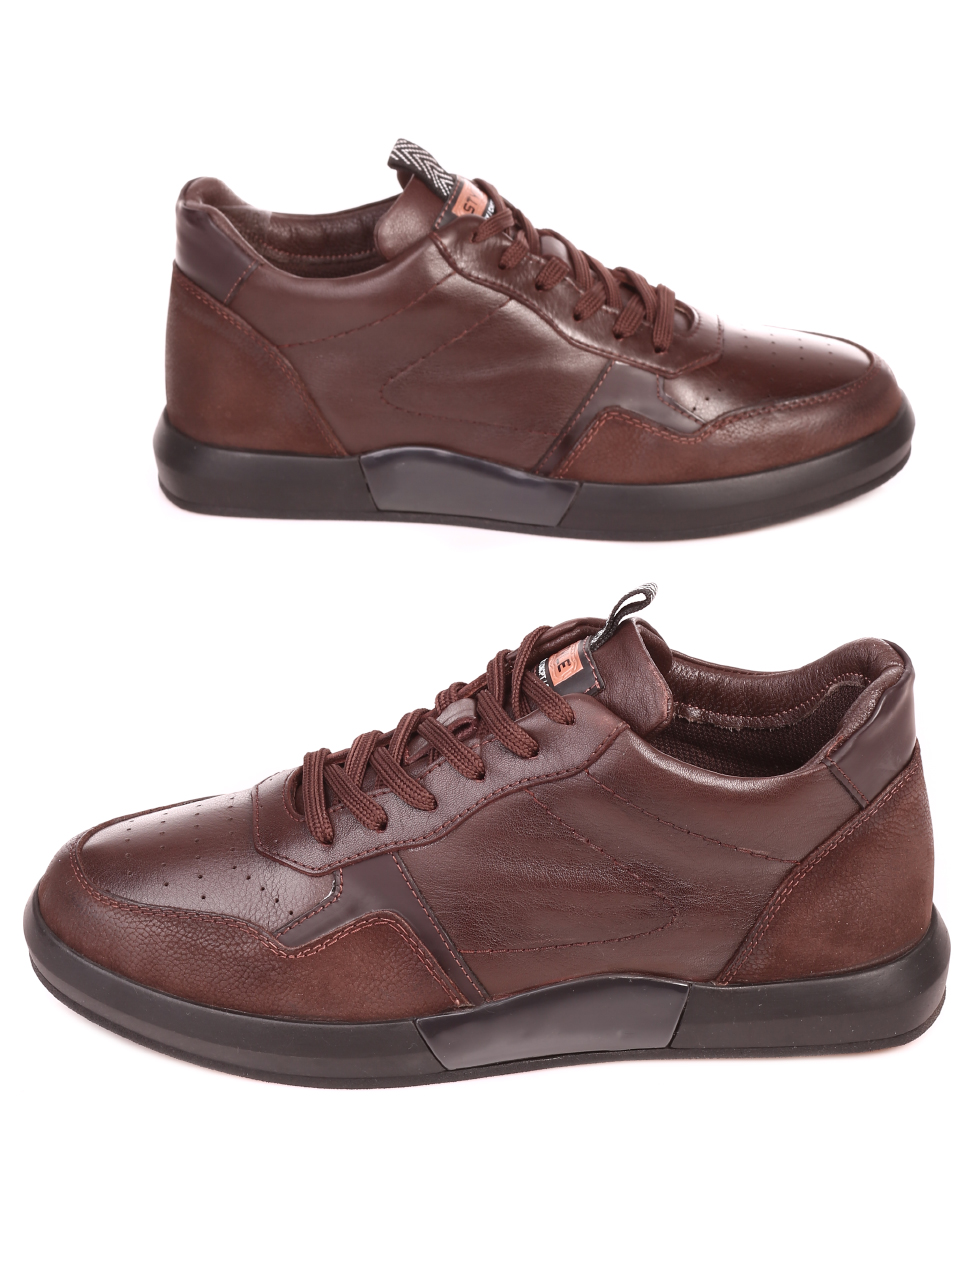 Ежедневни мъжки обувки от естествена кожа и естествен набук 7AT-21859 brown